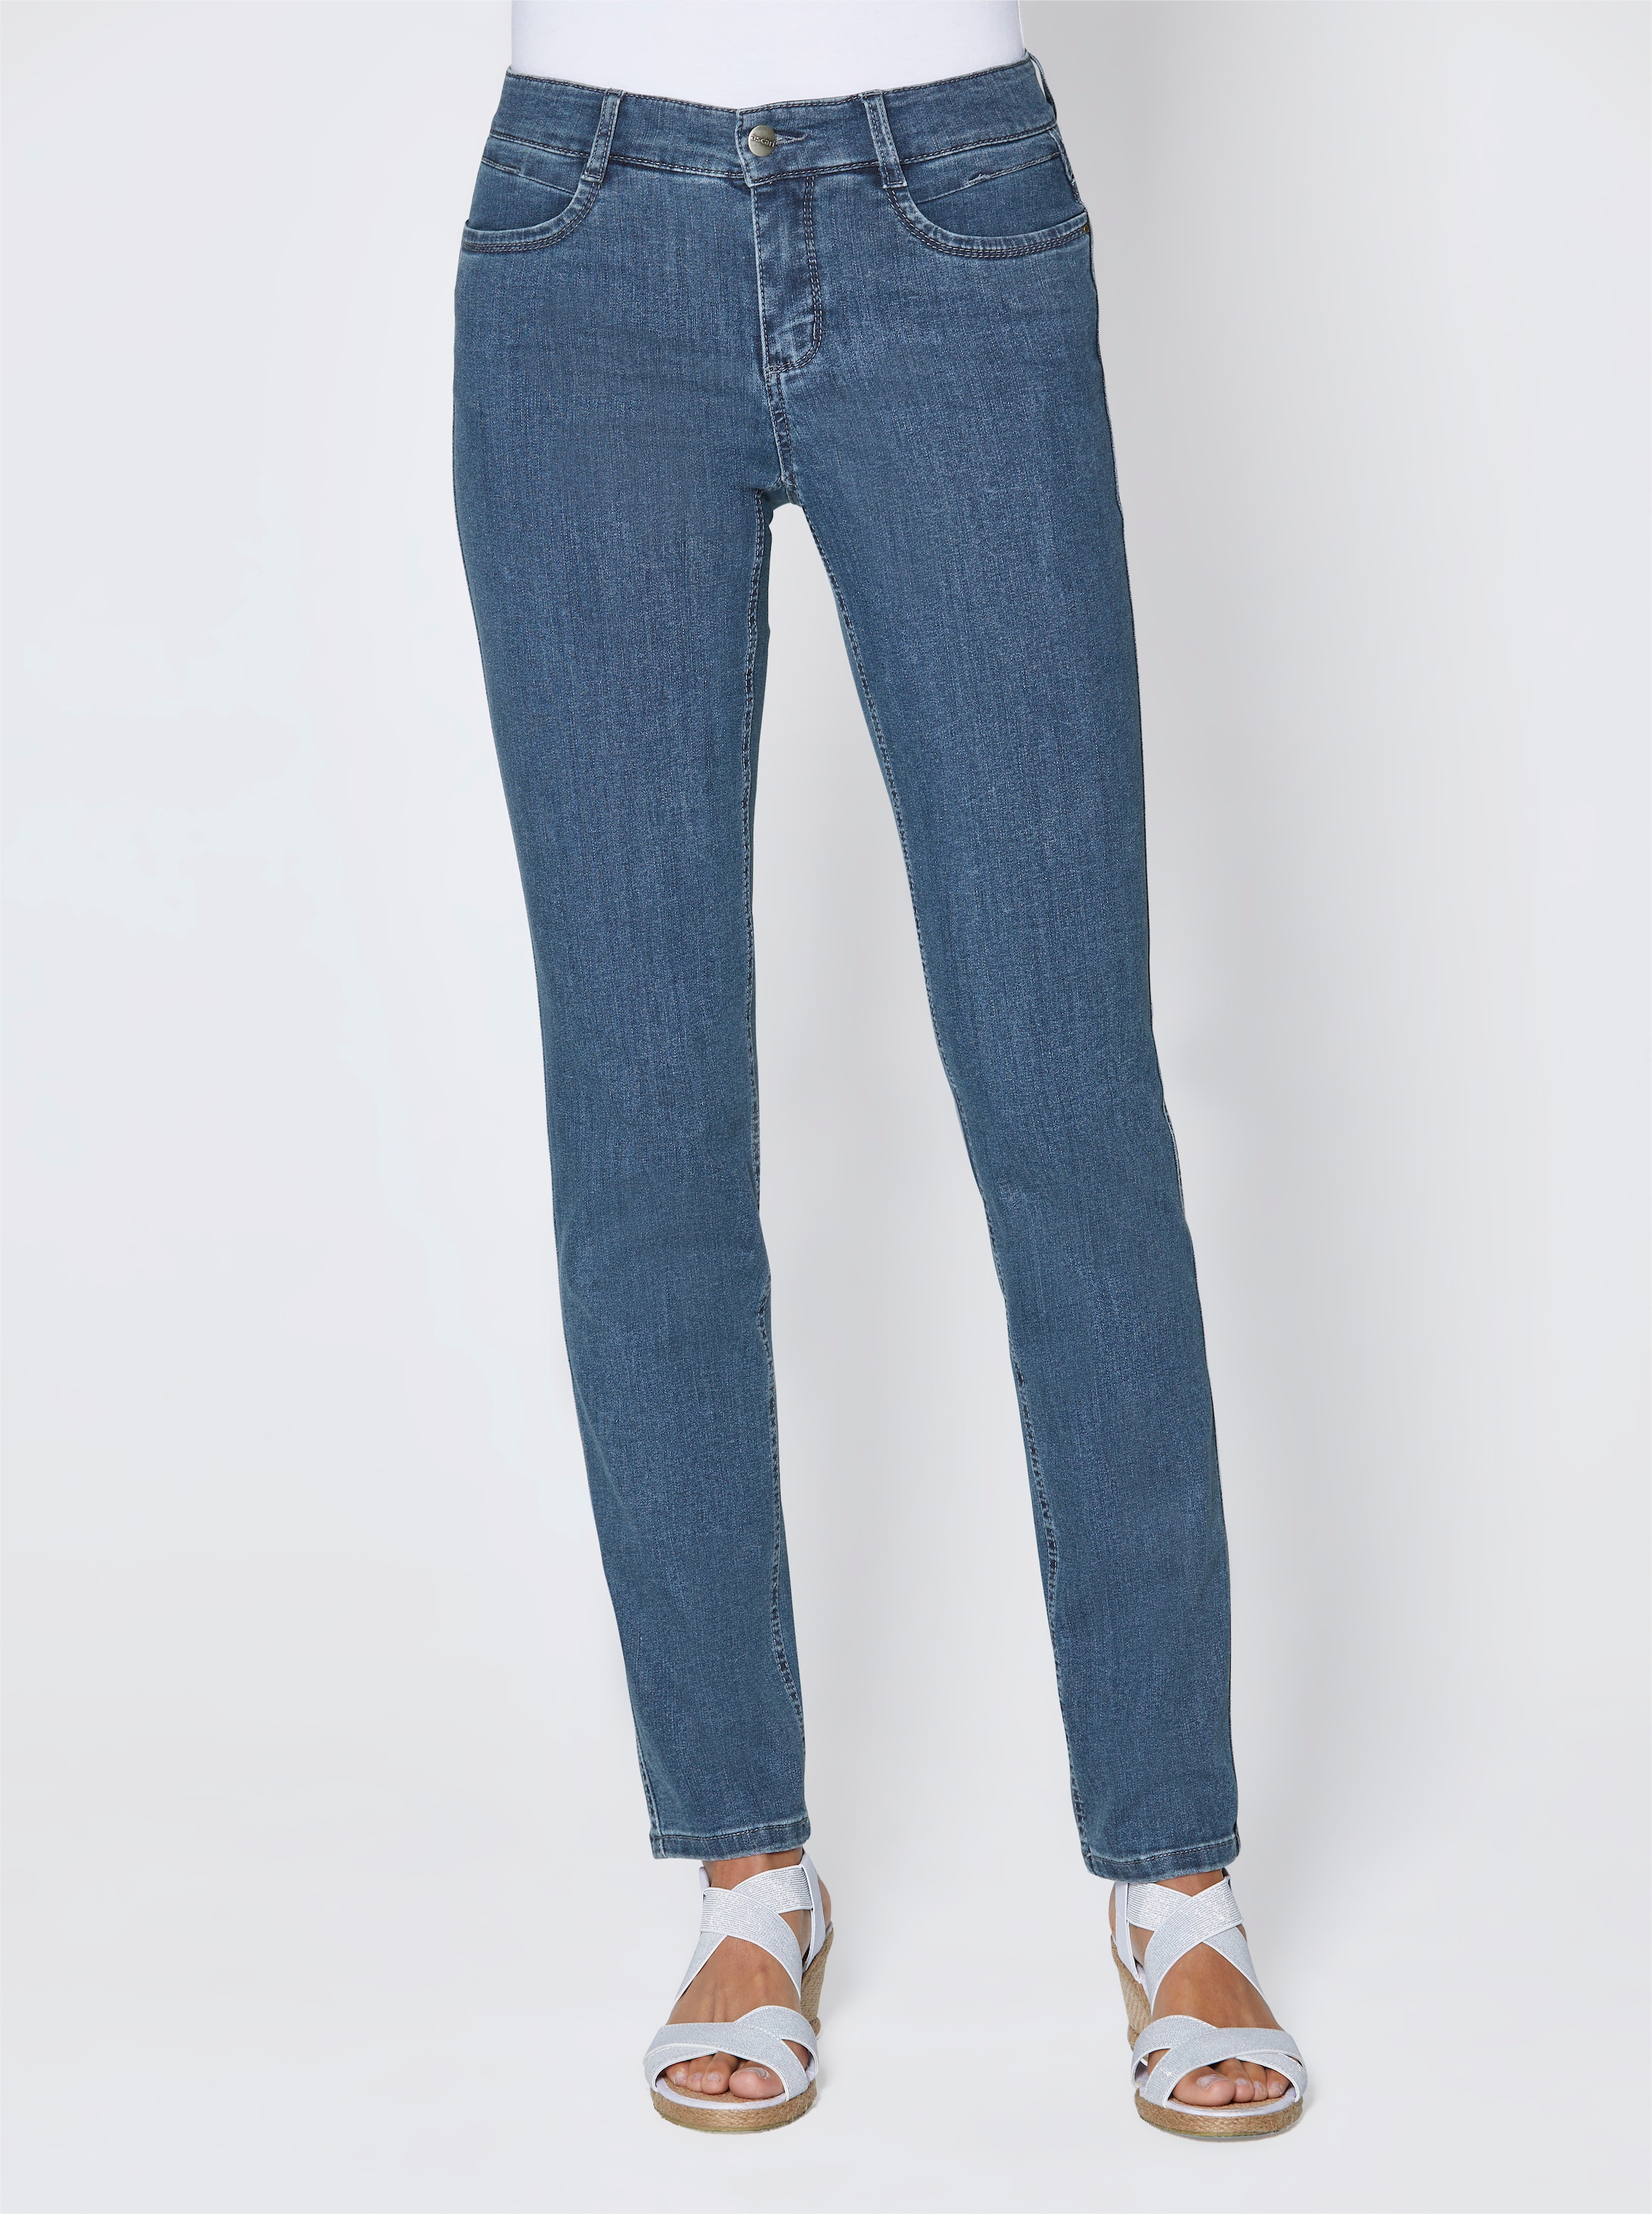 unser günstig Kaufen-Stretch-Jeans in jeansblau von Ascari. Stretch-Jeans in jeansblau von Ascari <![CDATA[Perfekt zur aktuellen Mode! Edel-Jeans in schmaler Röhrenform. Sitzt super und ist herrlich bequem dank der bi-elastischen Superstretch-Qualität. Unser Tipp: Für eine